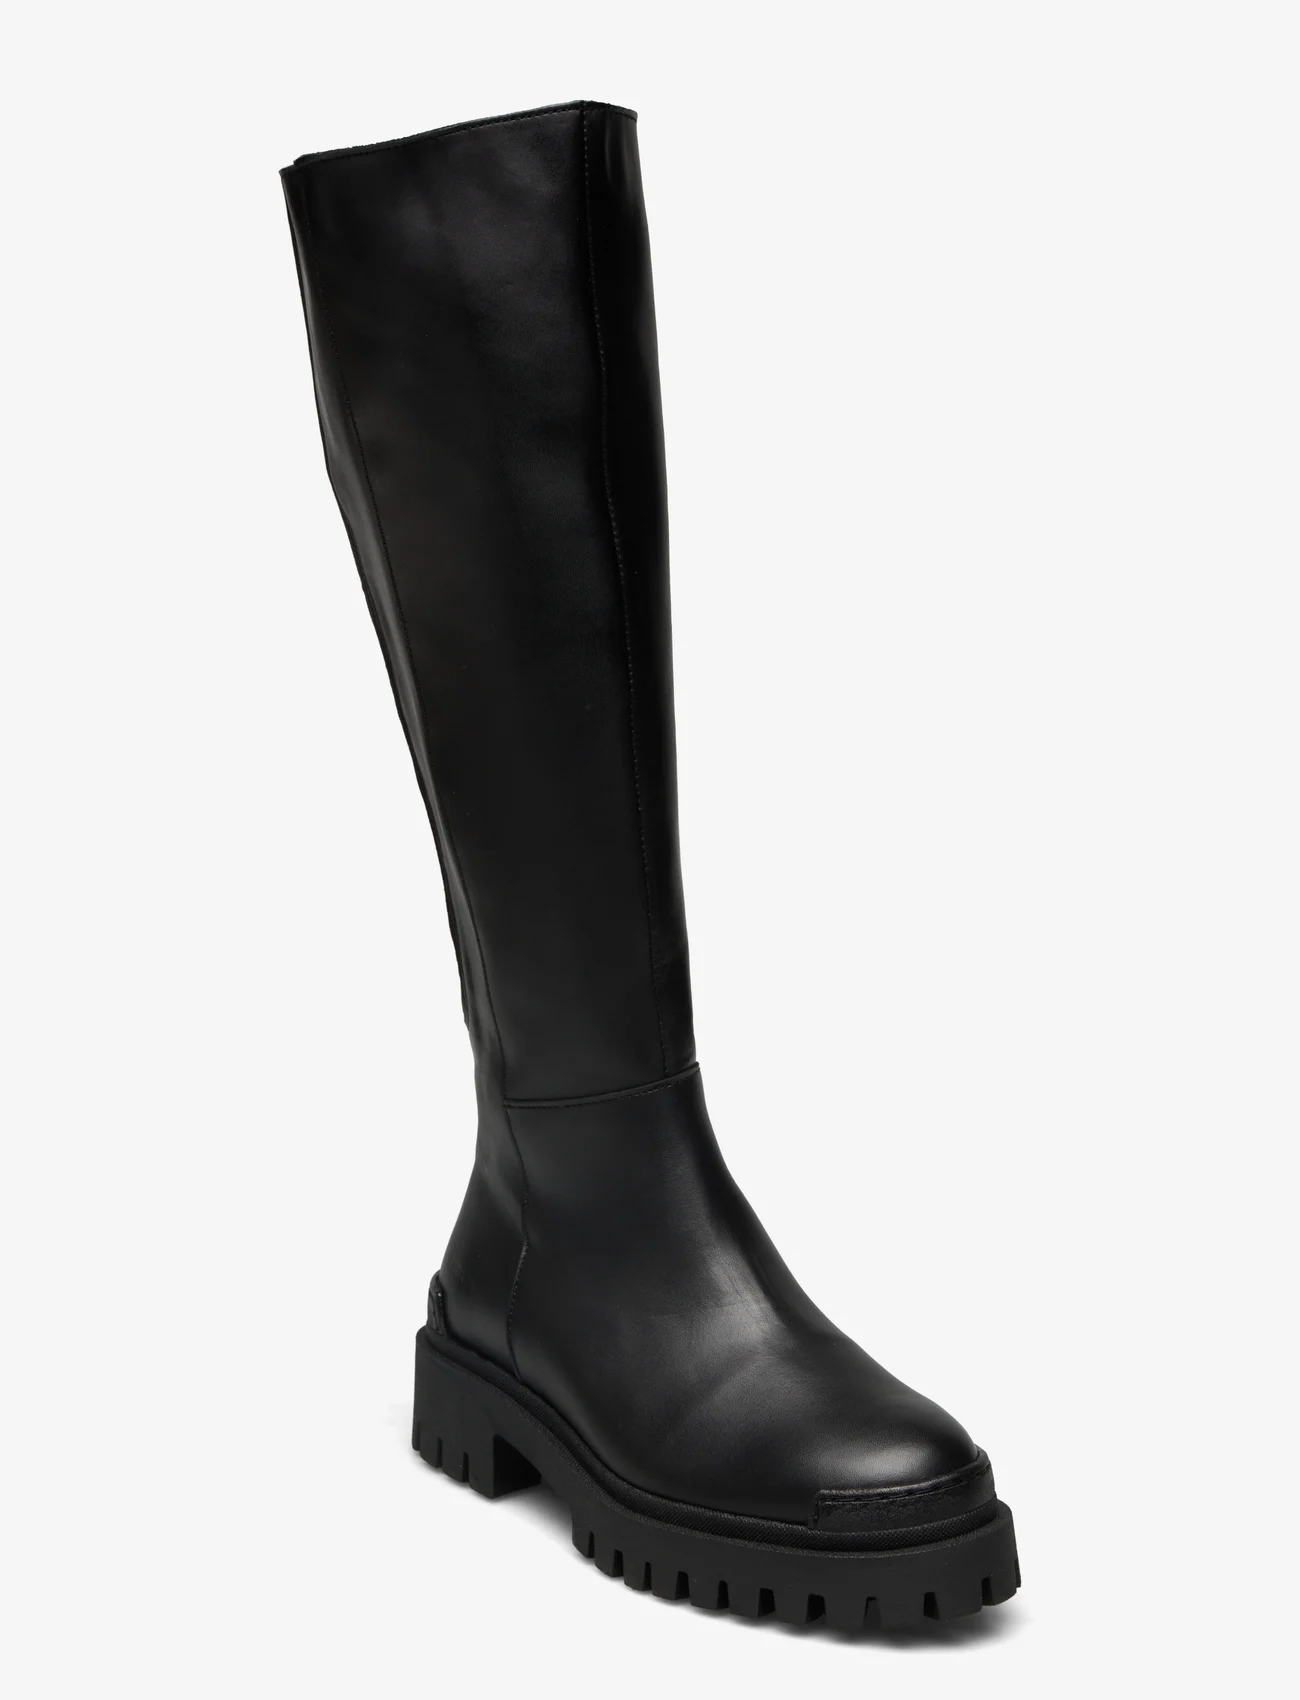 ANGULUS - Boots - flat - pitkävartiset saappaat - 1604/019 black/black - 0